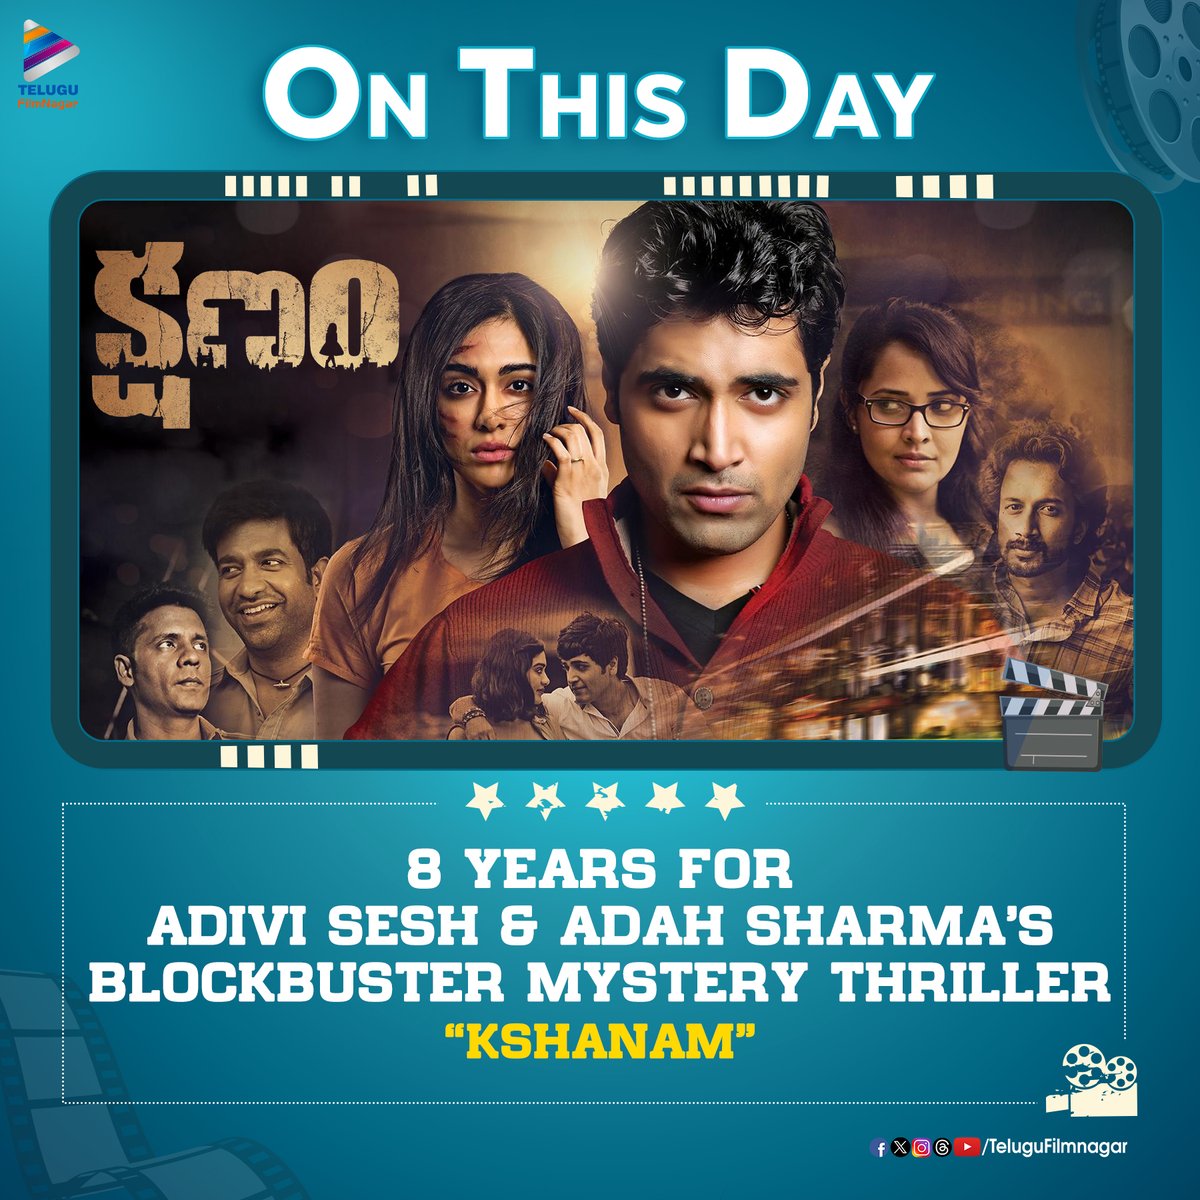 ఏదో లాగా ఉందీ నీ చూపే కోరిందీ మనసే ఆగనందీ నిను చూస్తేనే ప్రియా...చెలియా.. చెలియా....🎶💞
Celebrating 8️⃣ blockbuster years for  #AdiviSesh & #AdahSharma's blockbuster mystery thriller #Kshanam! 💥

#8YearsForKshanam
@AdiviSesh @adah_sharma @anusuyakhasba @ActorSatyaDev